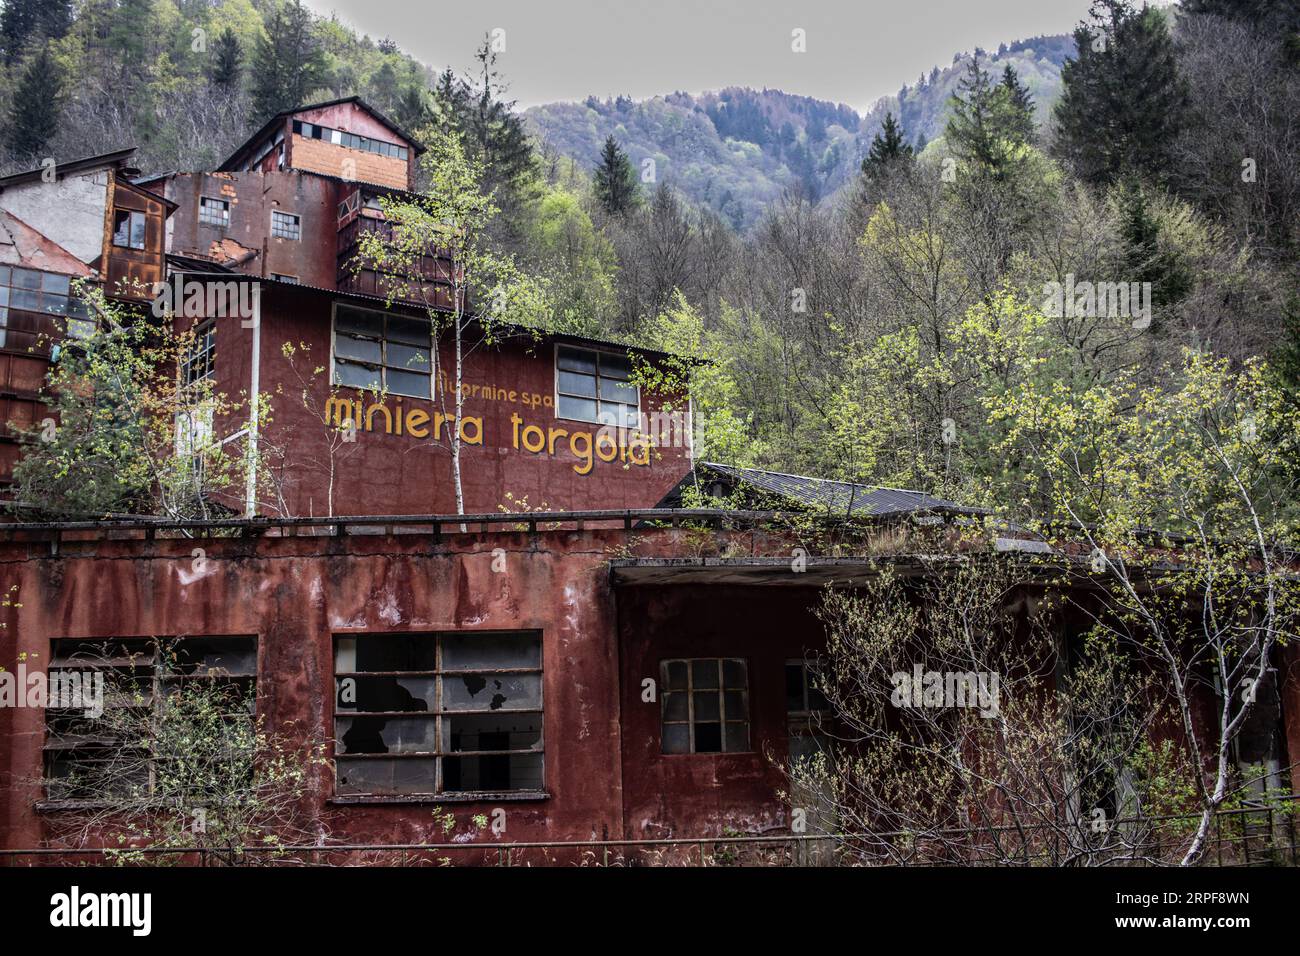 Photographie par drone, lieux abandonnés, mine à Collio (BS) - Italie Banque D'Images